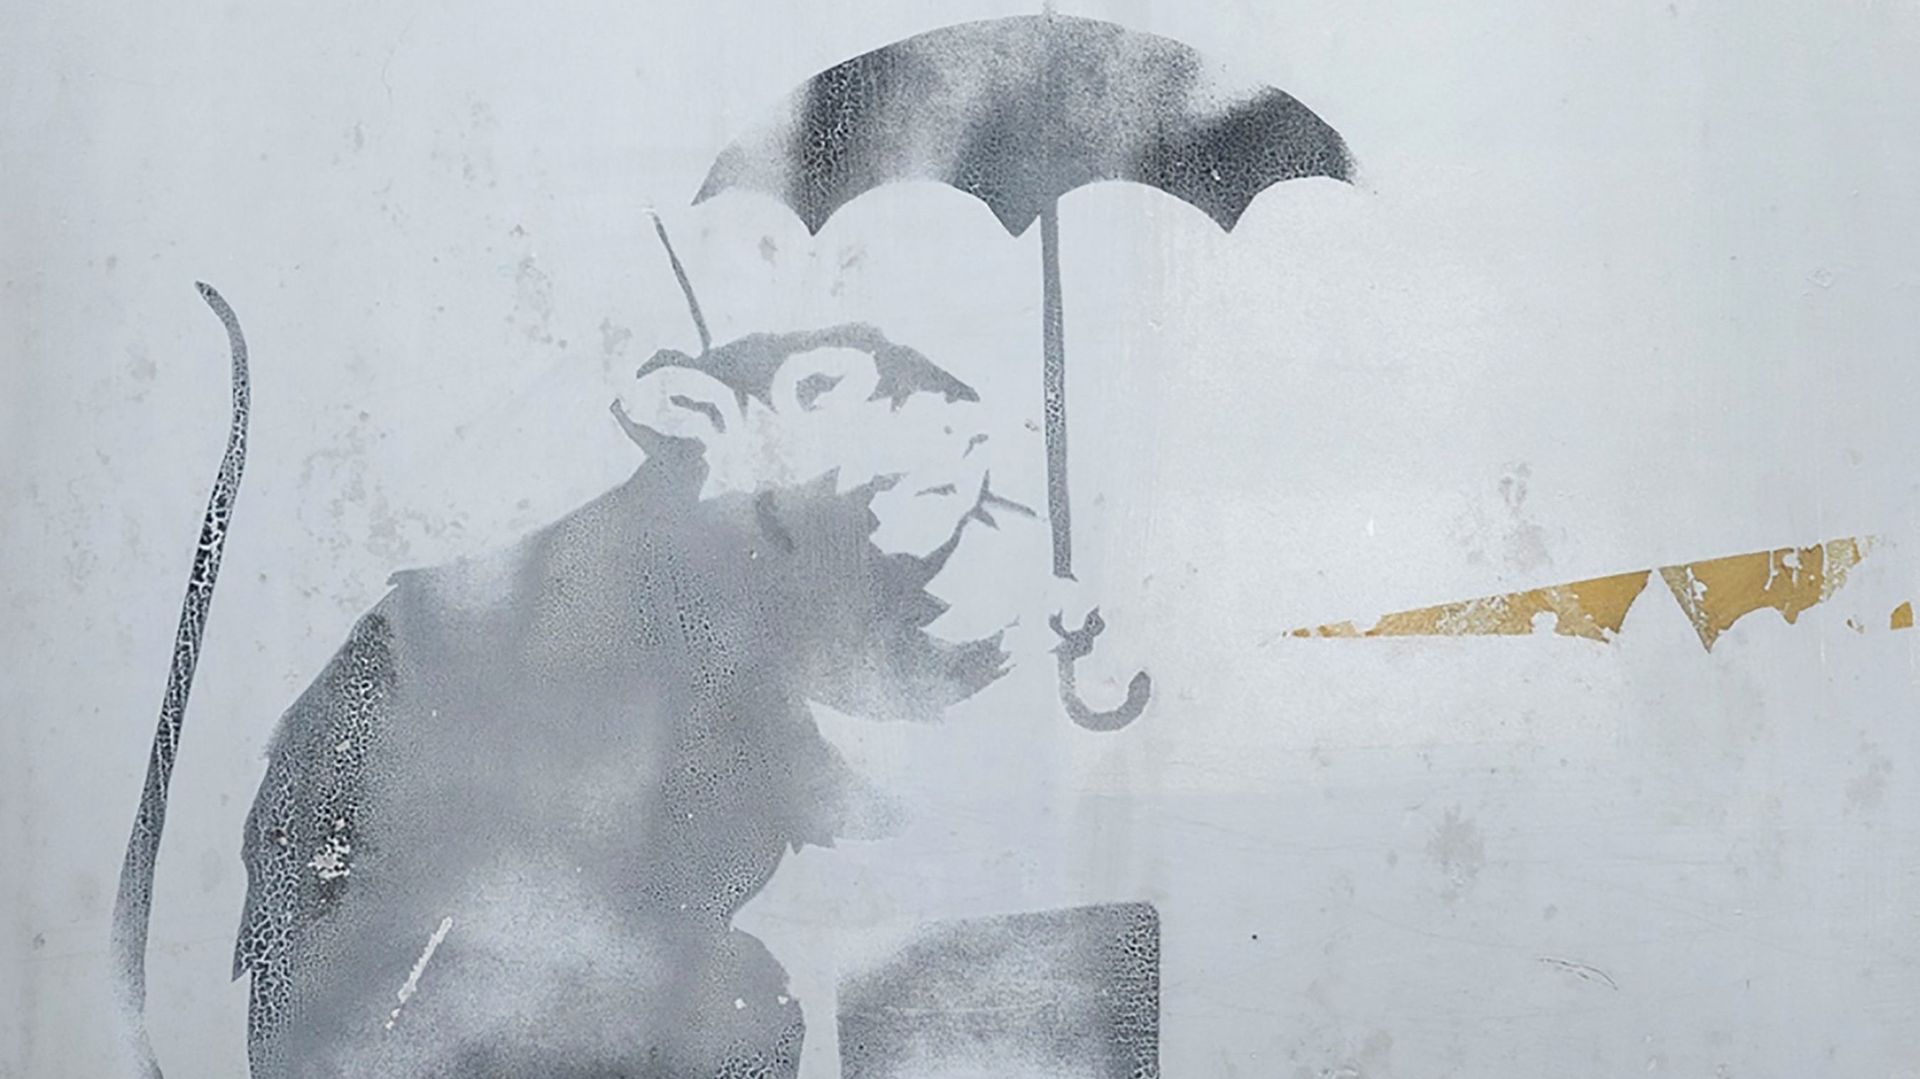 Le street artist Banksy exposé à Moscou sans son autorisation